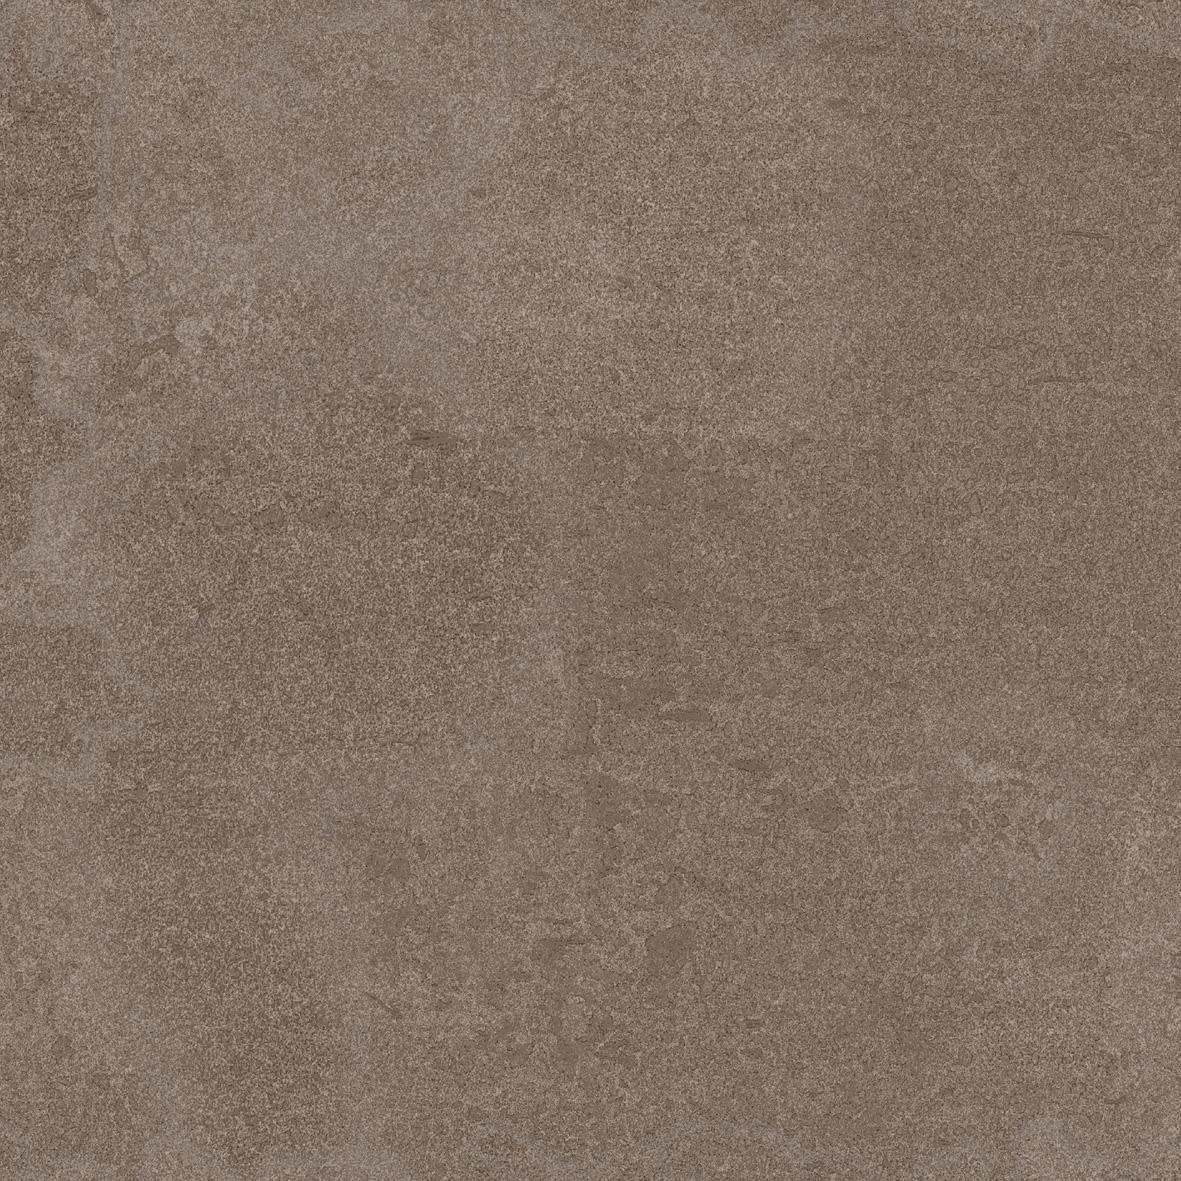 Floor Tiles for Bathroom Tiles, Outdoor/Terrace